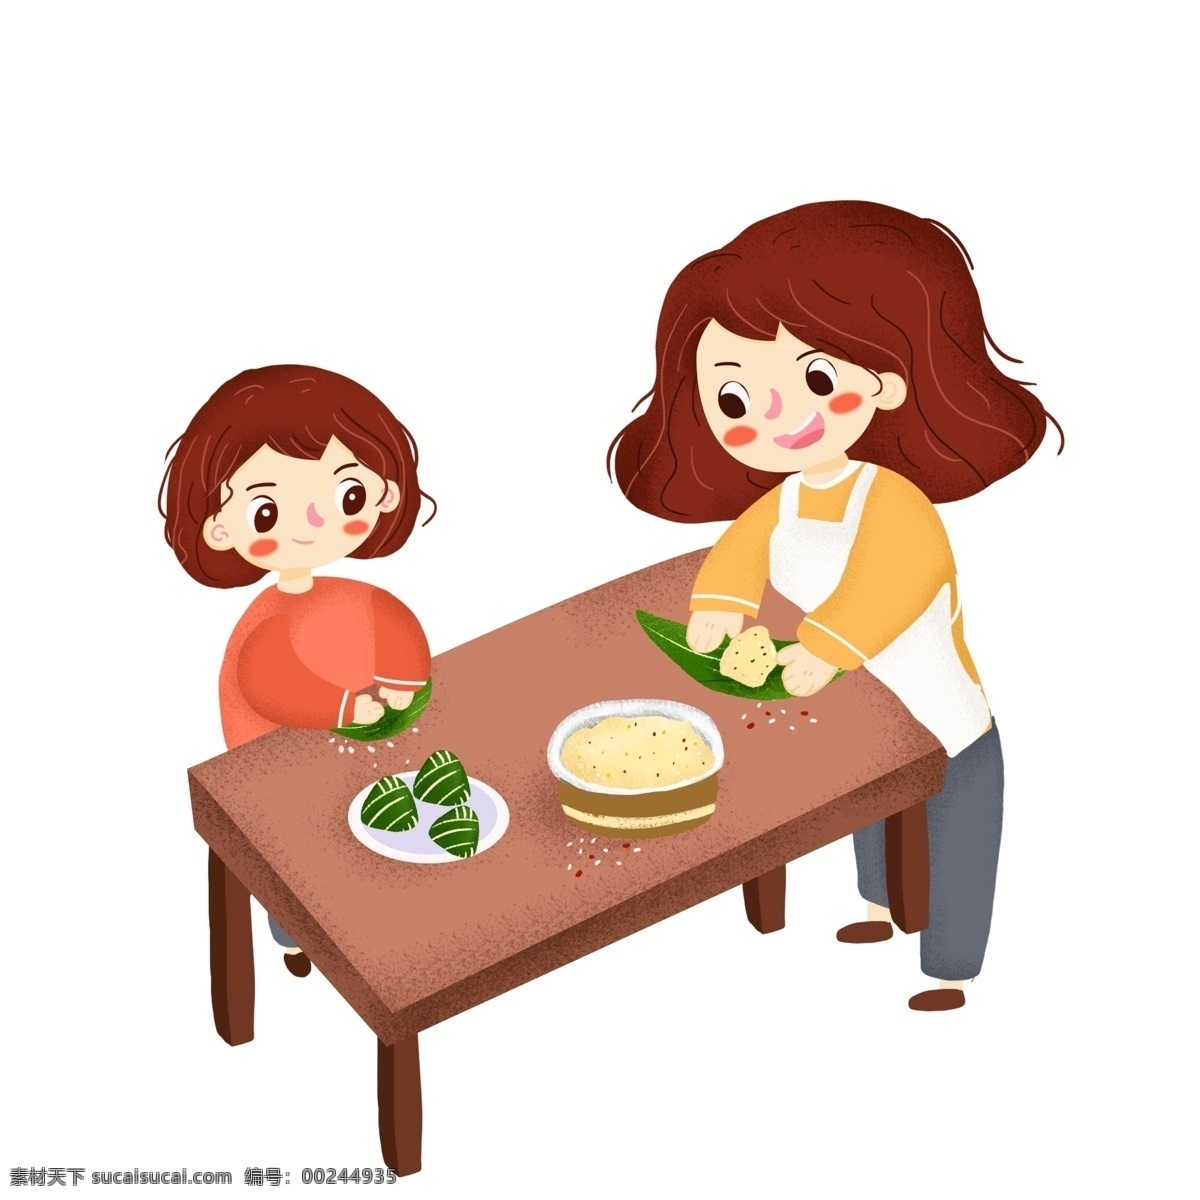 端午节 包 粽子 人物 传统节日 包粽子 吃粽子 卡通女孩 母亲 包粽子人物 糯米